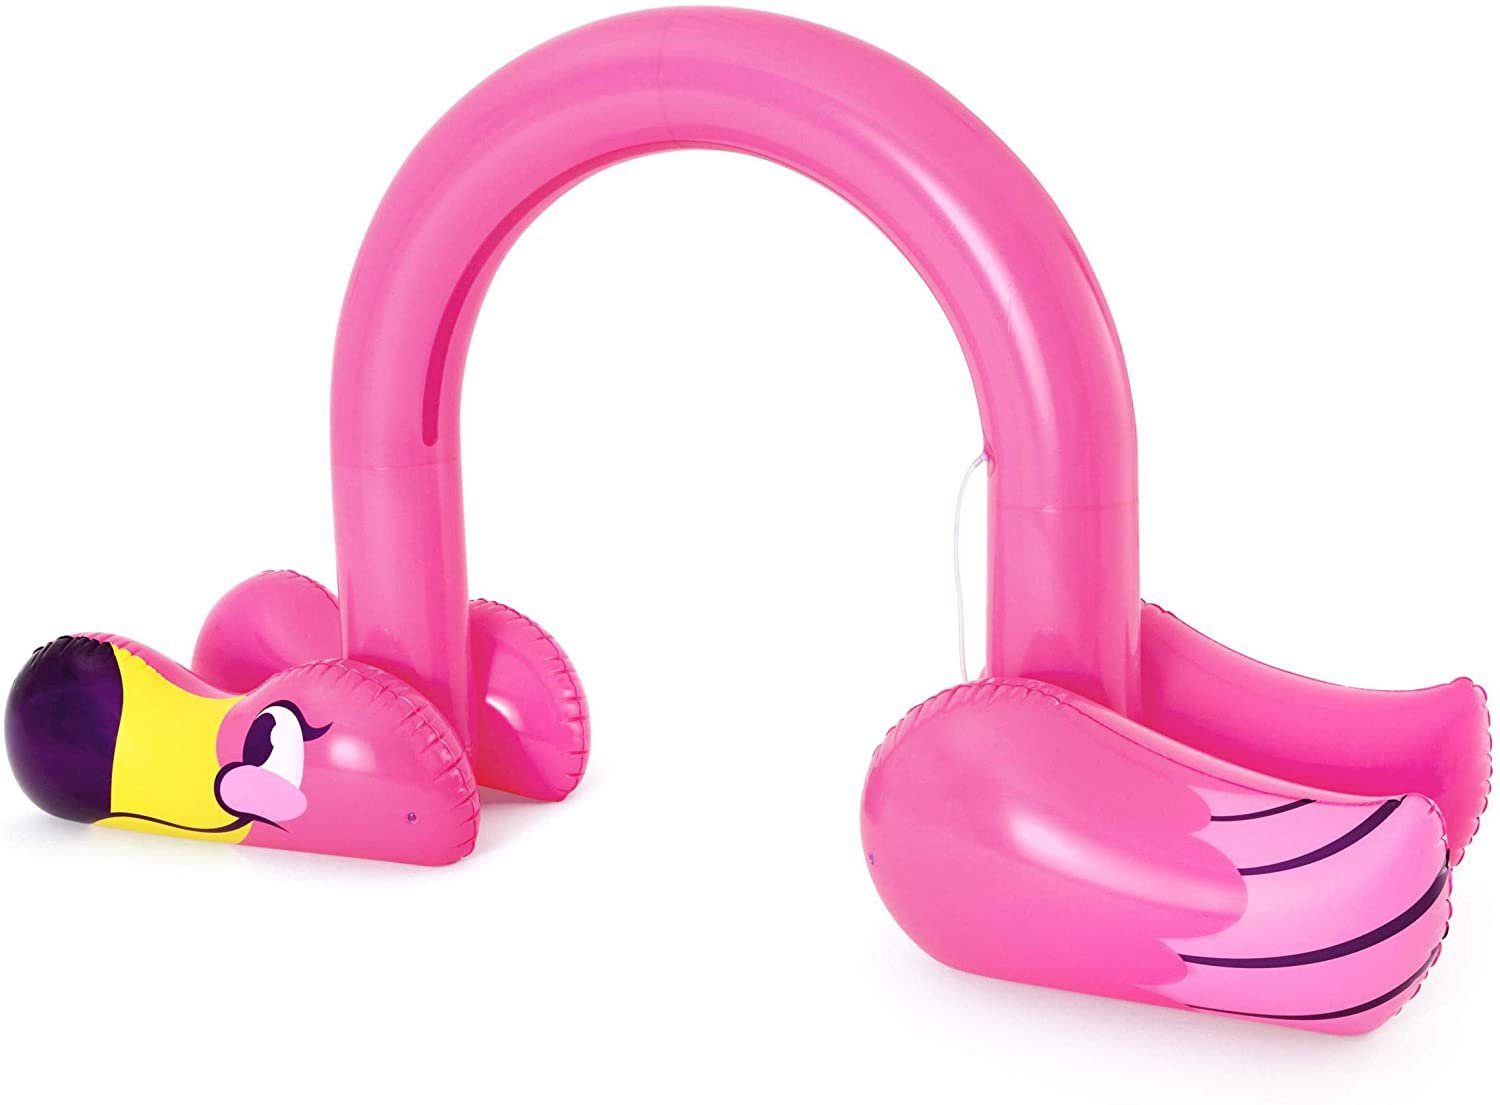 Bestway Badespielzeug Jumbo Flamingo